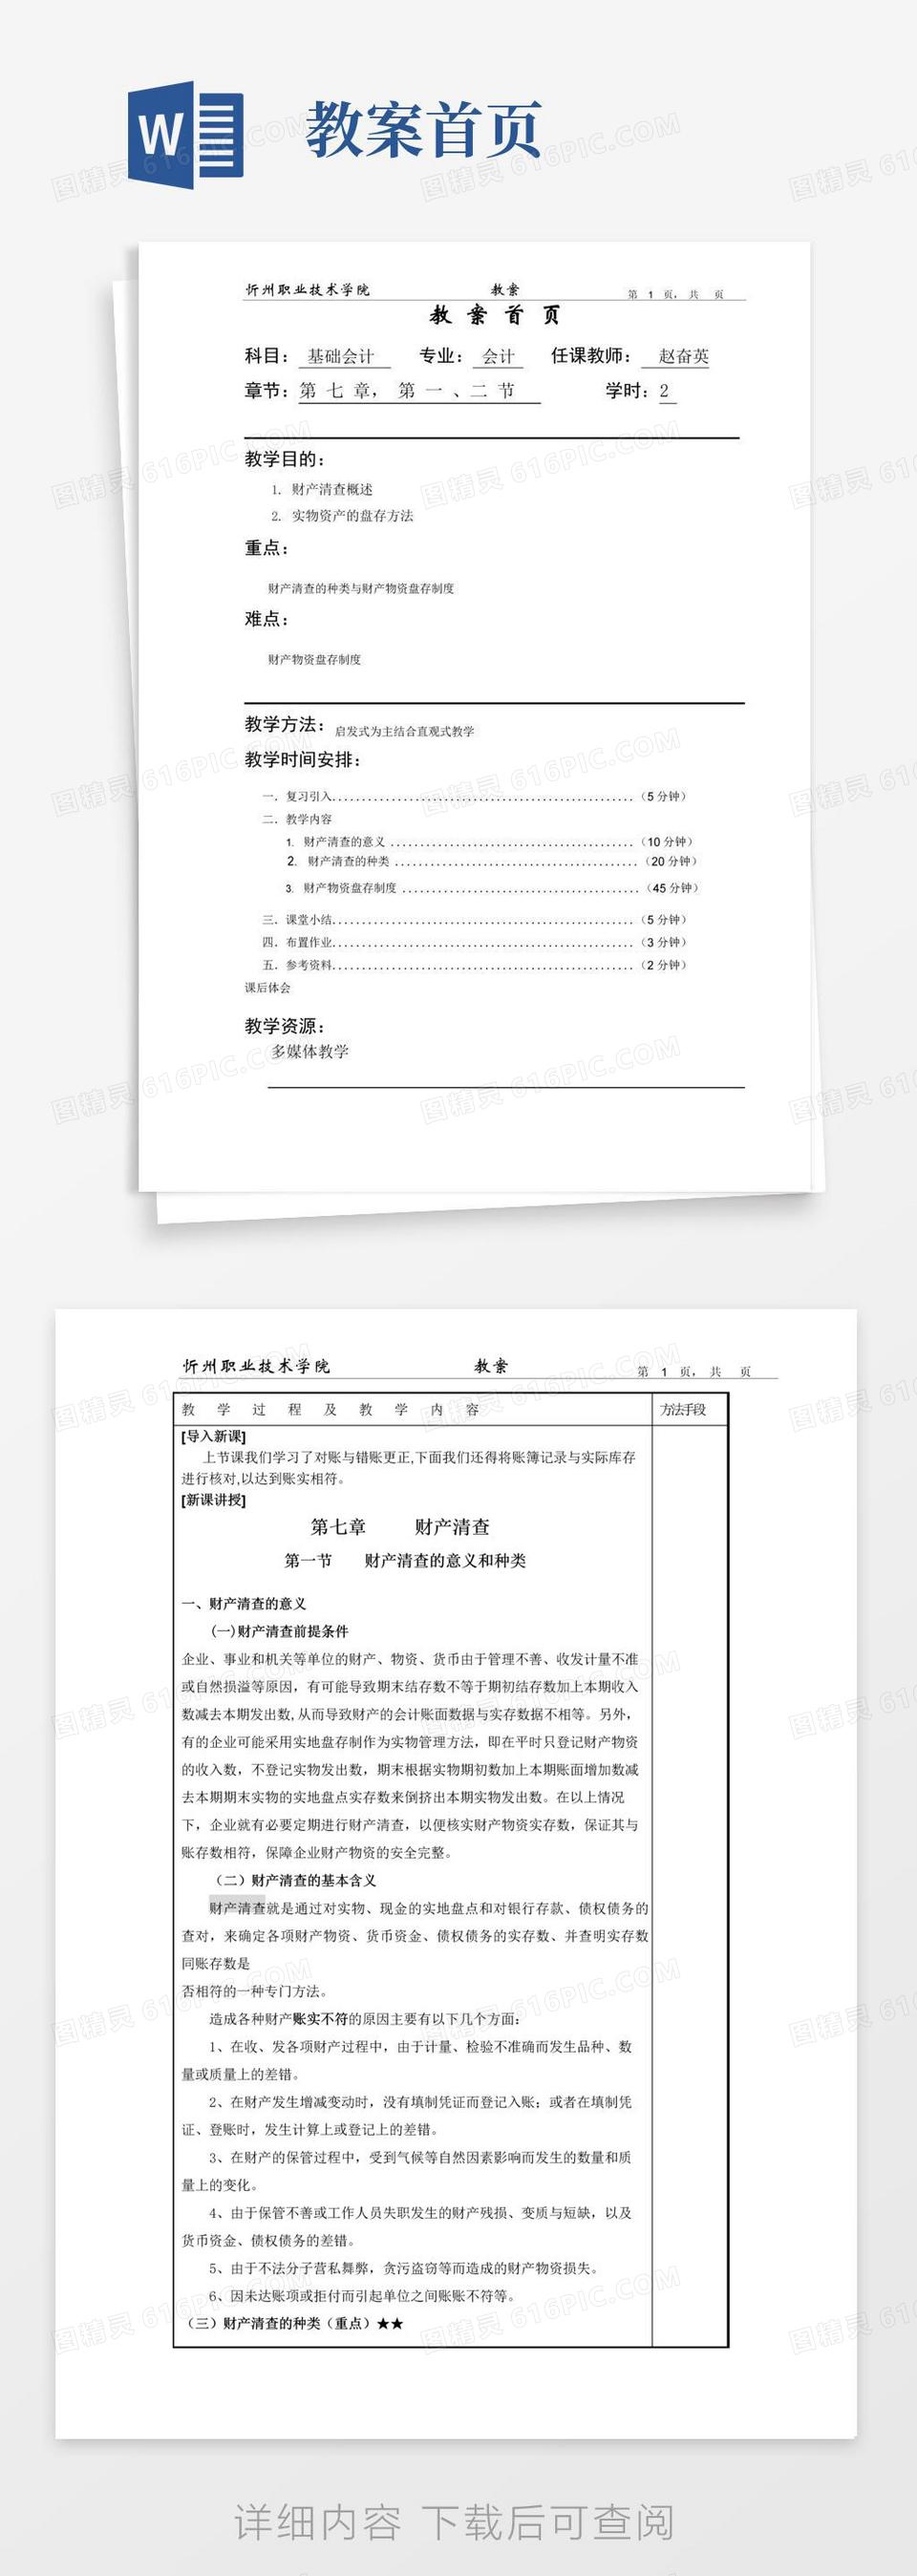 通用版教案首页-忻州职业技术学院